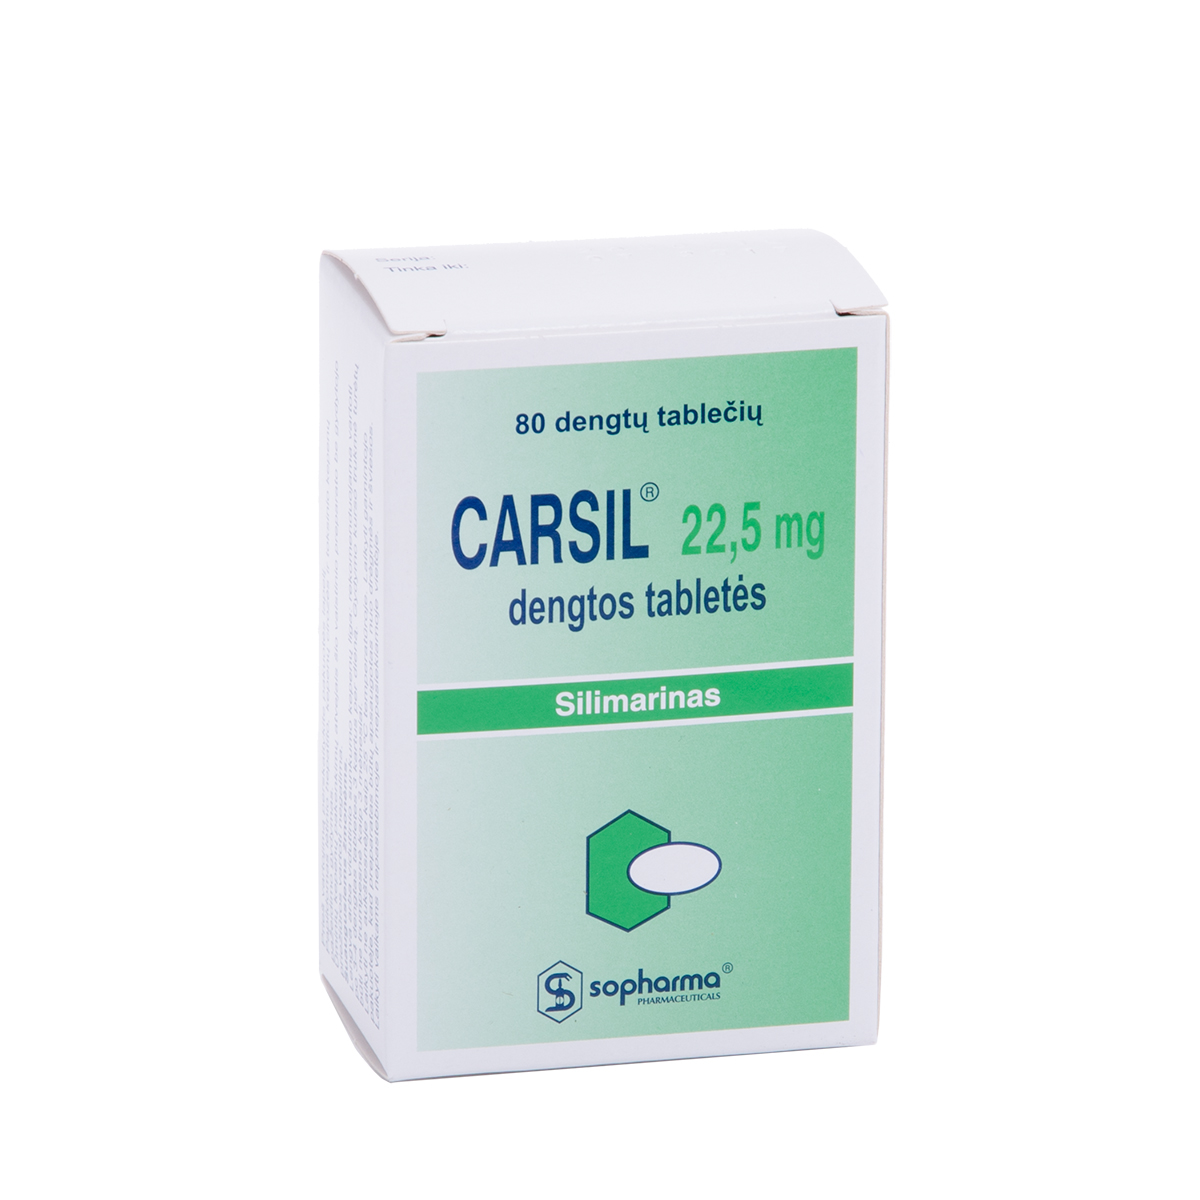 CARSIL, 22,5 mg, dengtos tabletės, N80